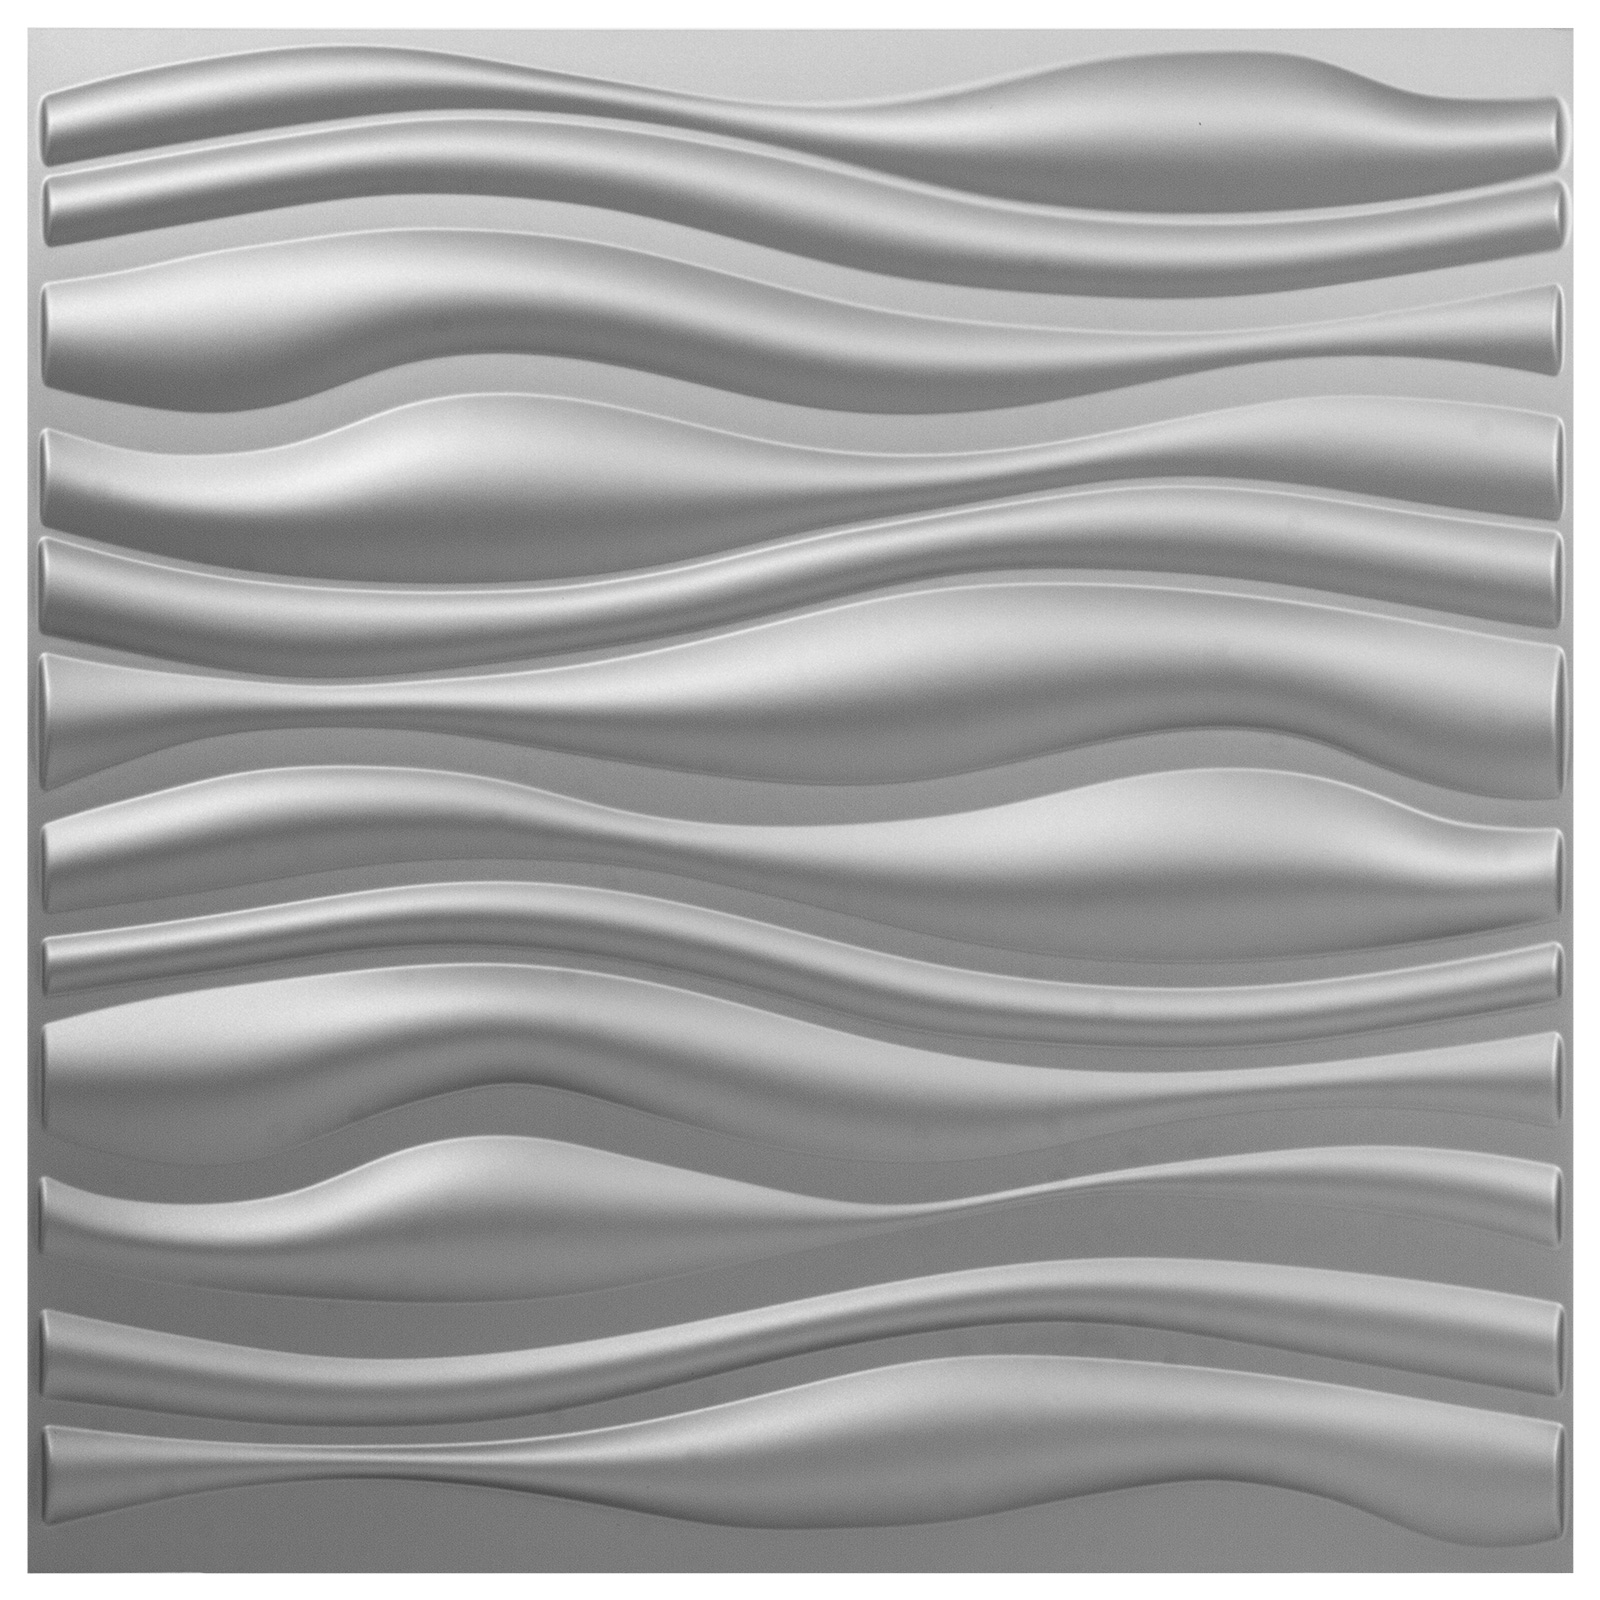 PVC 3D Wall Panels 13 Tiles Waves Design Wallpaper Textured Bricks 19.7 ...